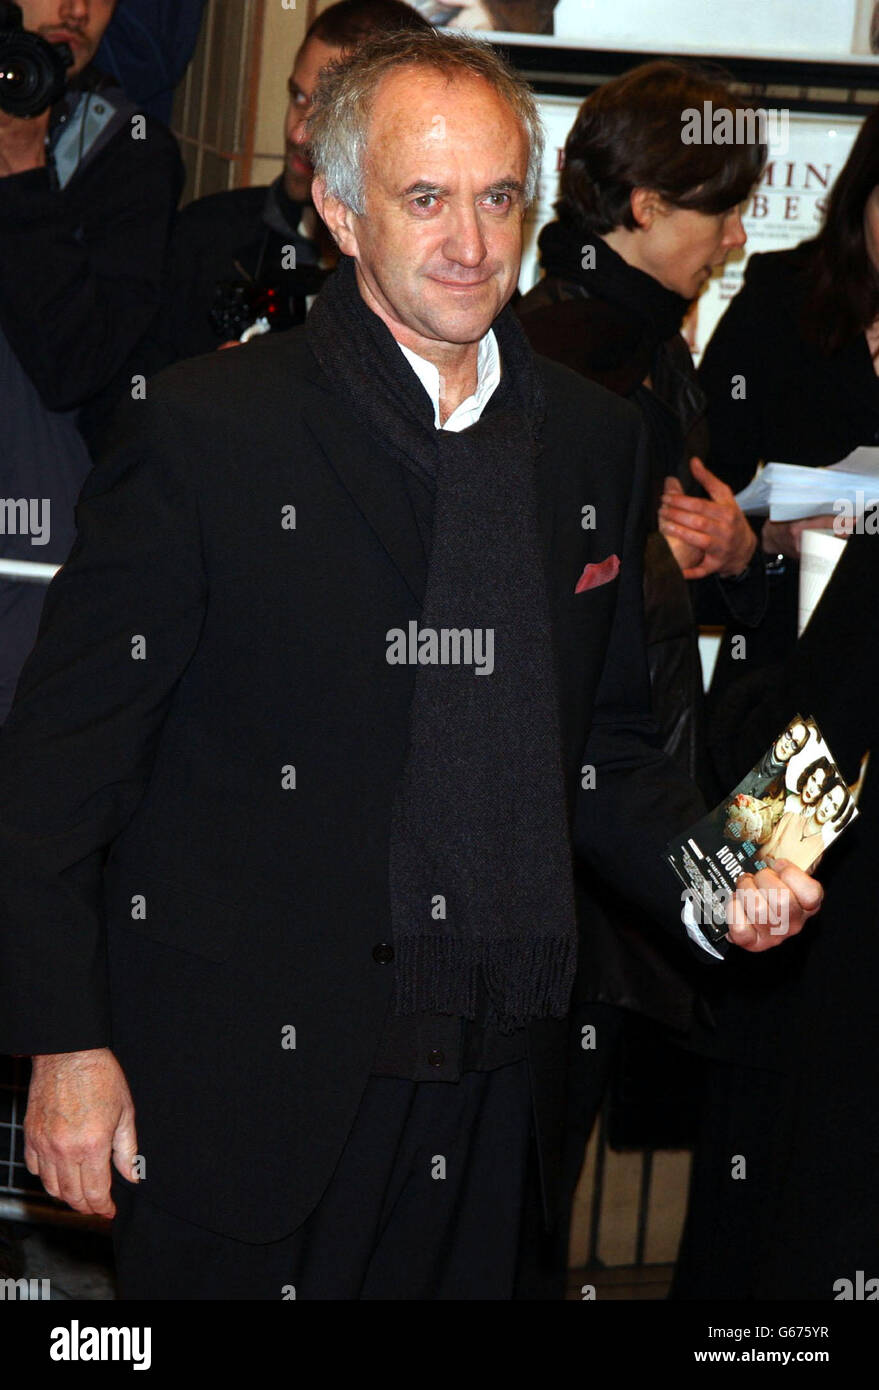 Der Schauspieler Jonathan Pryce kommt zur britischen Filmpremiere von Stephen Daldrys „The Hours“ im Chelsea Cinema im Südwesten Londons. Basierend auf dem mit dem Pulitzer-Preis ausgezeichneten Roman von Michael Cunningham, treten „The Hours“ mit Nicole Kidman, Julianne Moore und Claire Danes auf. Stockfoto